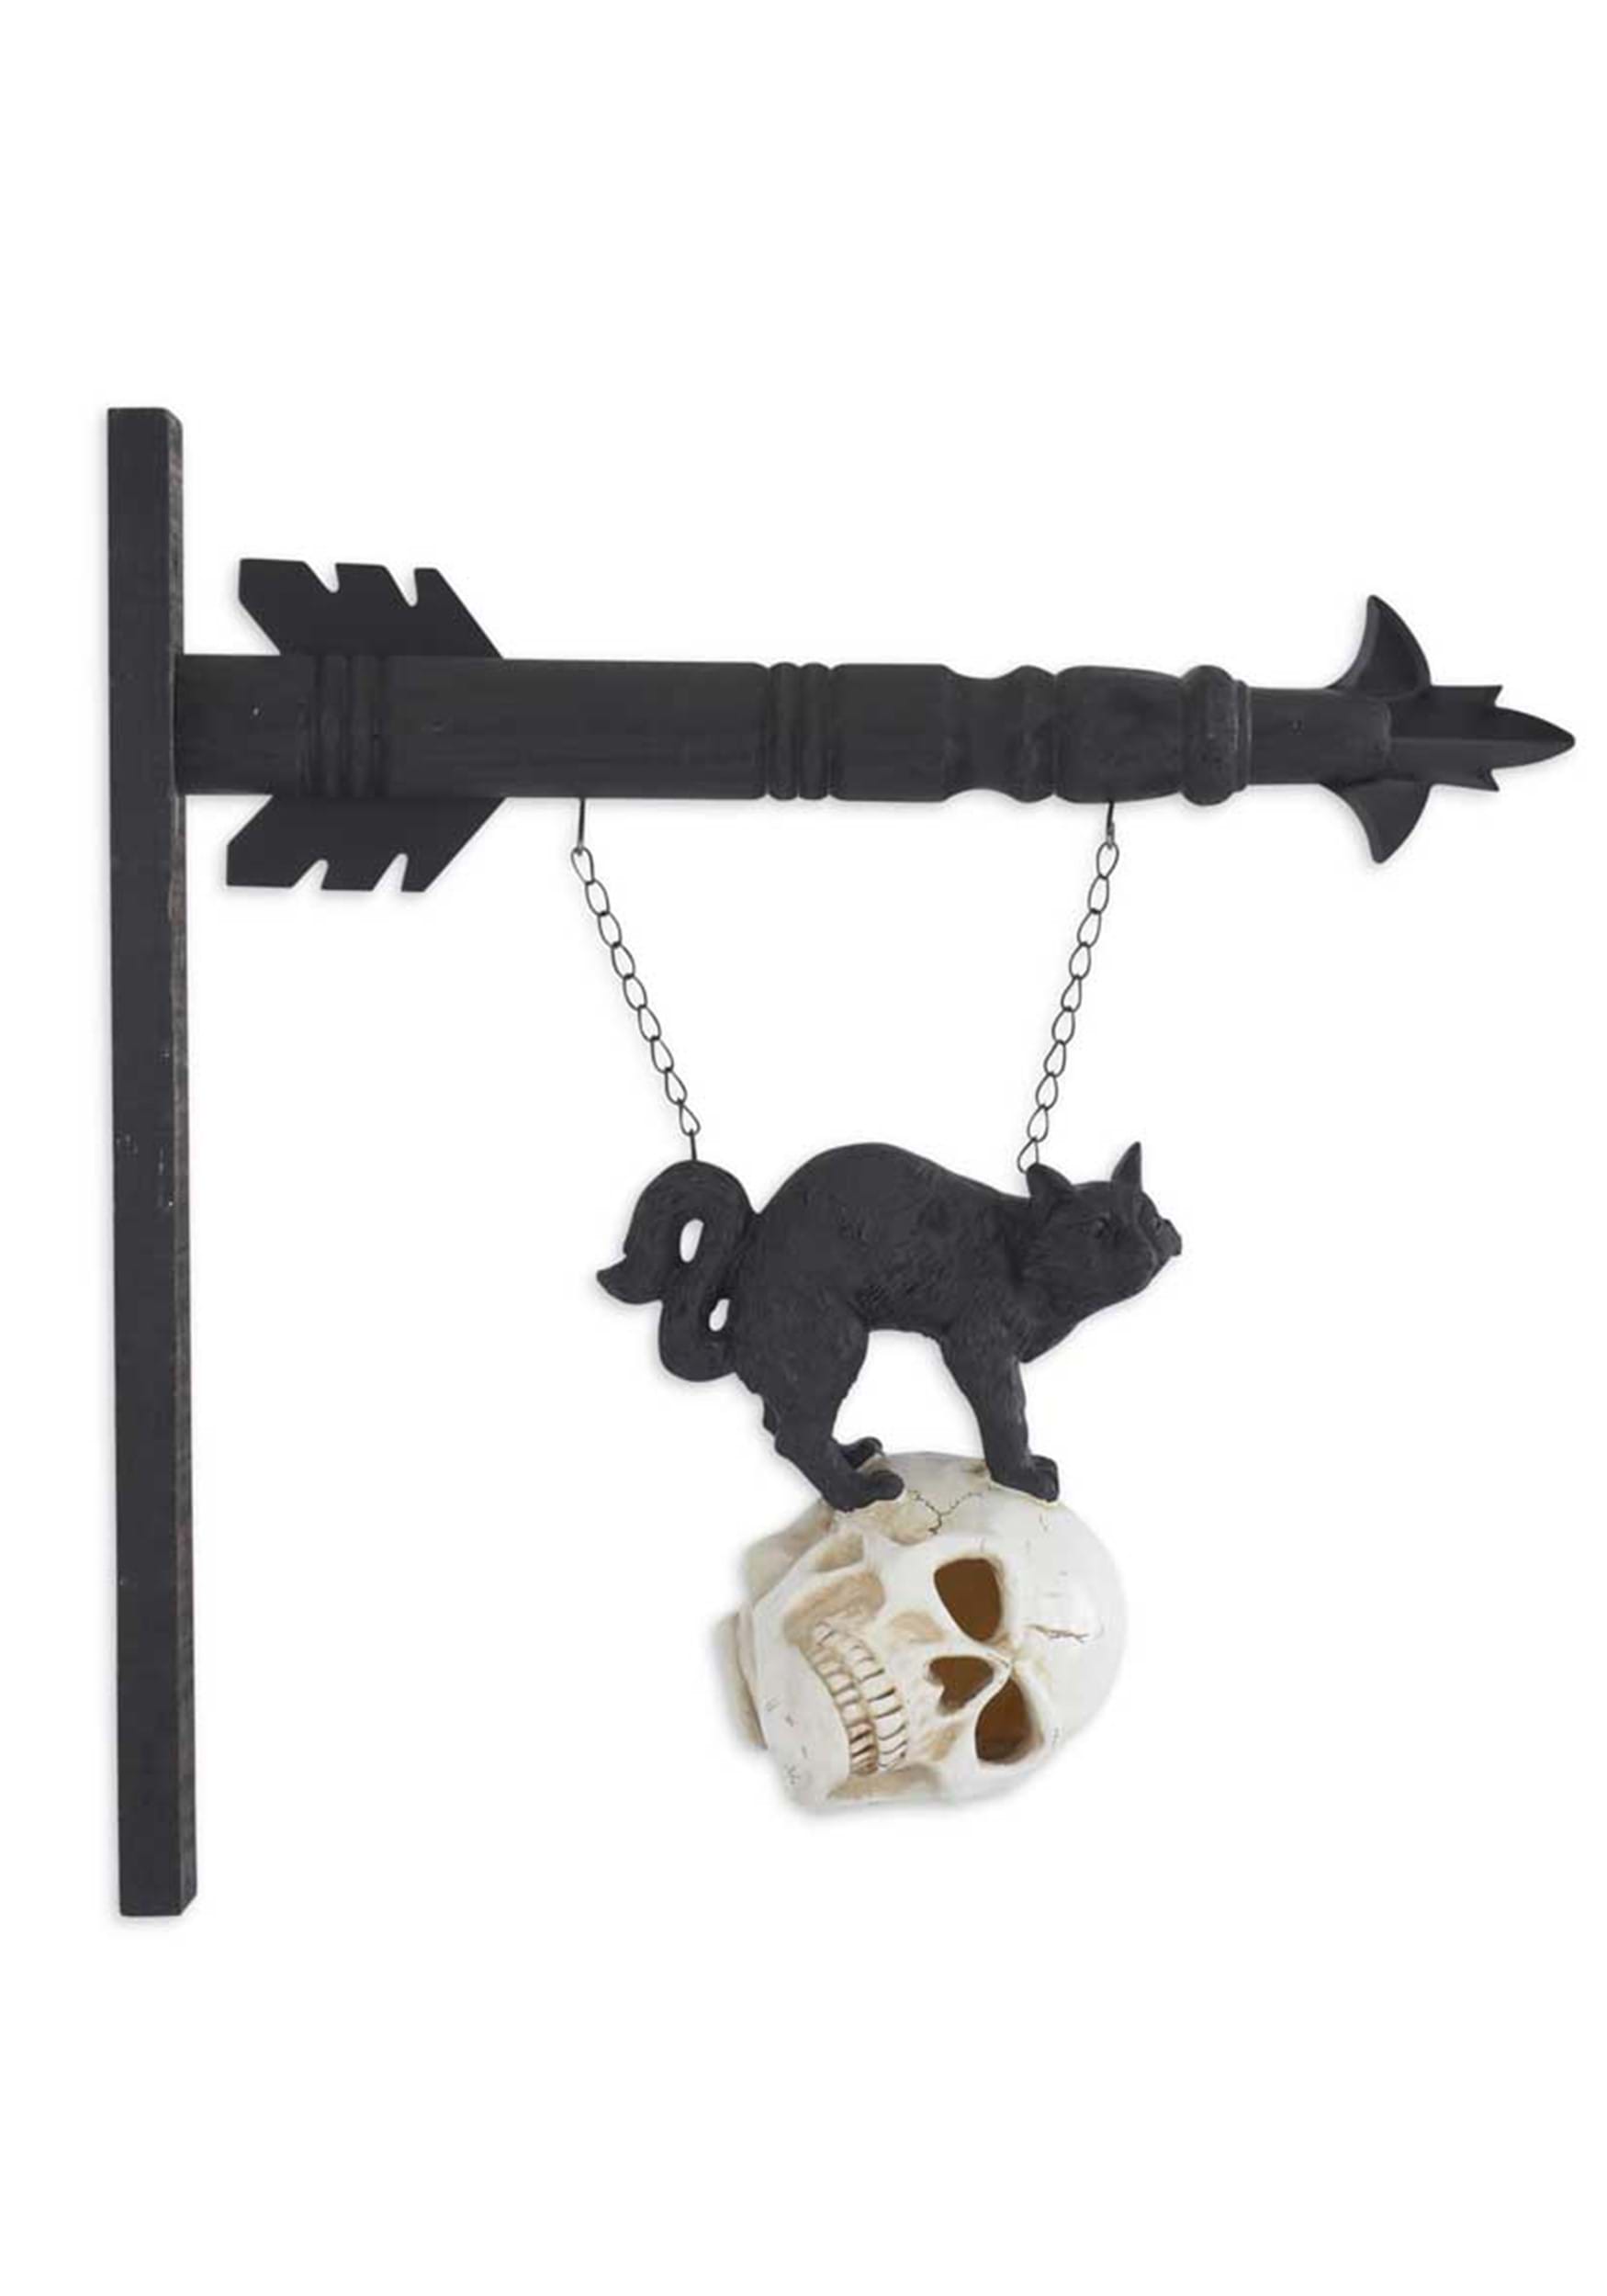 8 Inch Black Resin Cat on LED Skull Figure